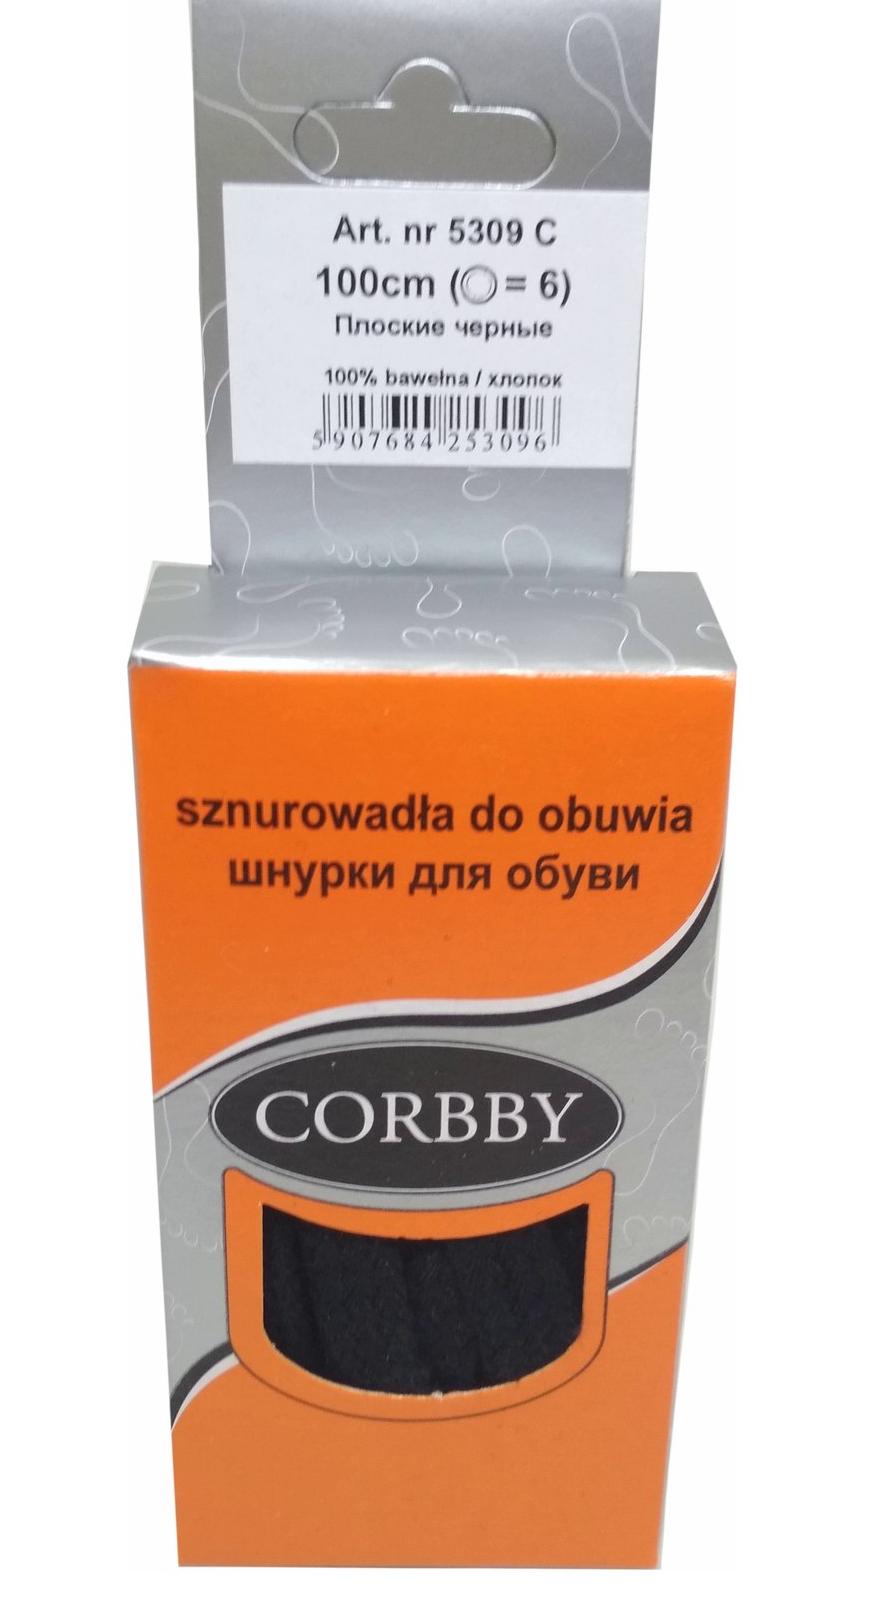 Corbby Шнурки 100 см Плоские Черные